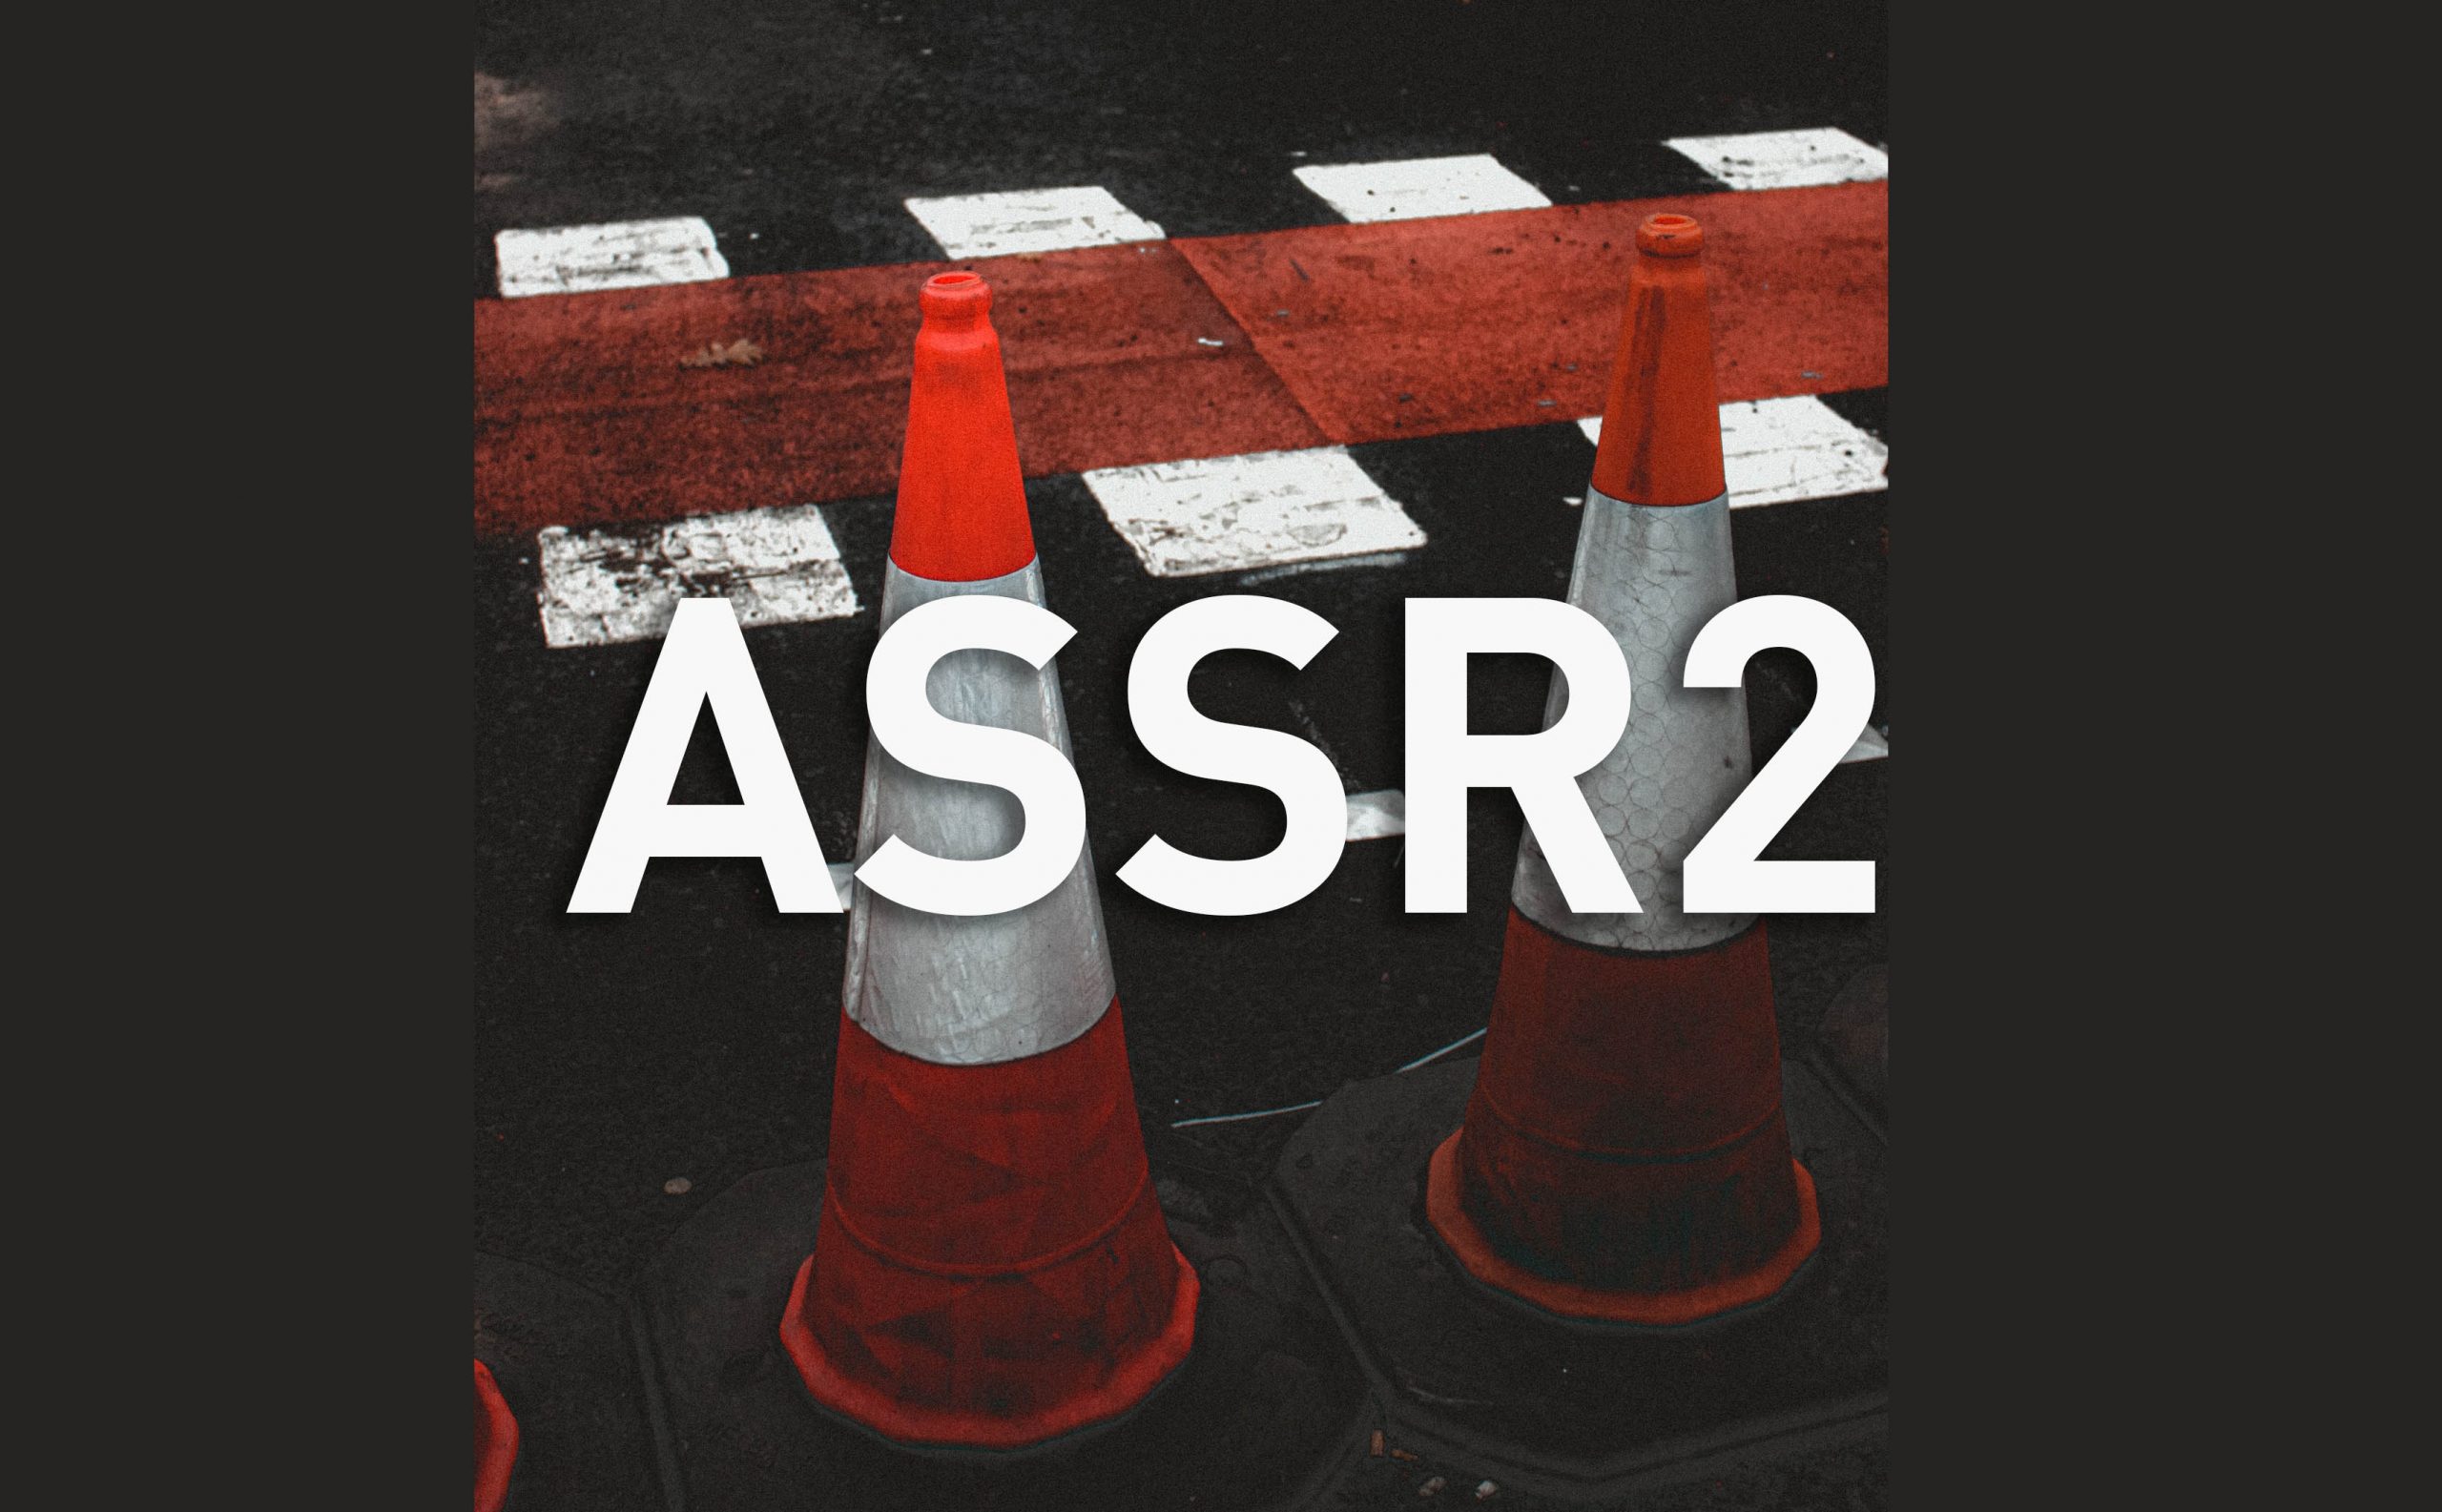 ASSR2